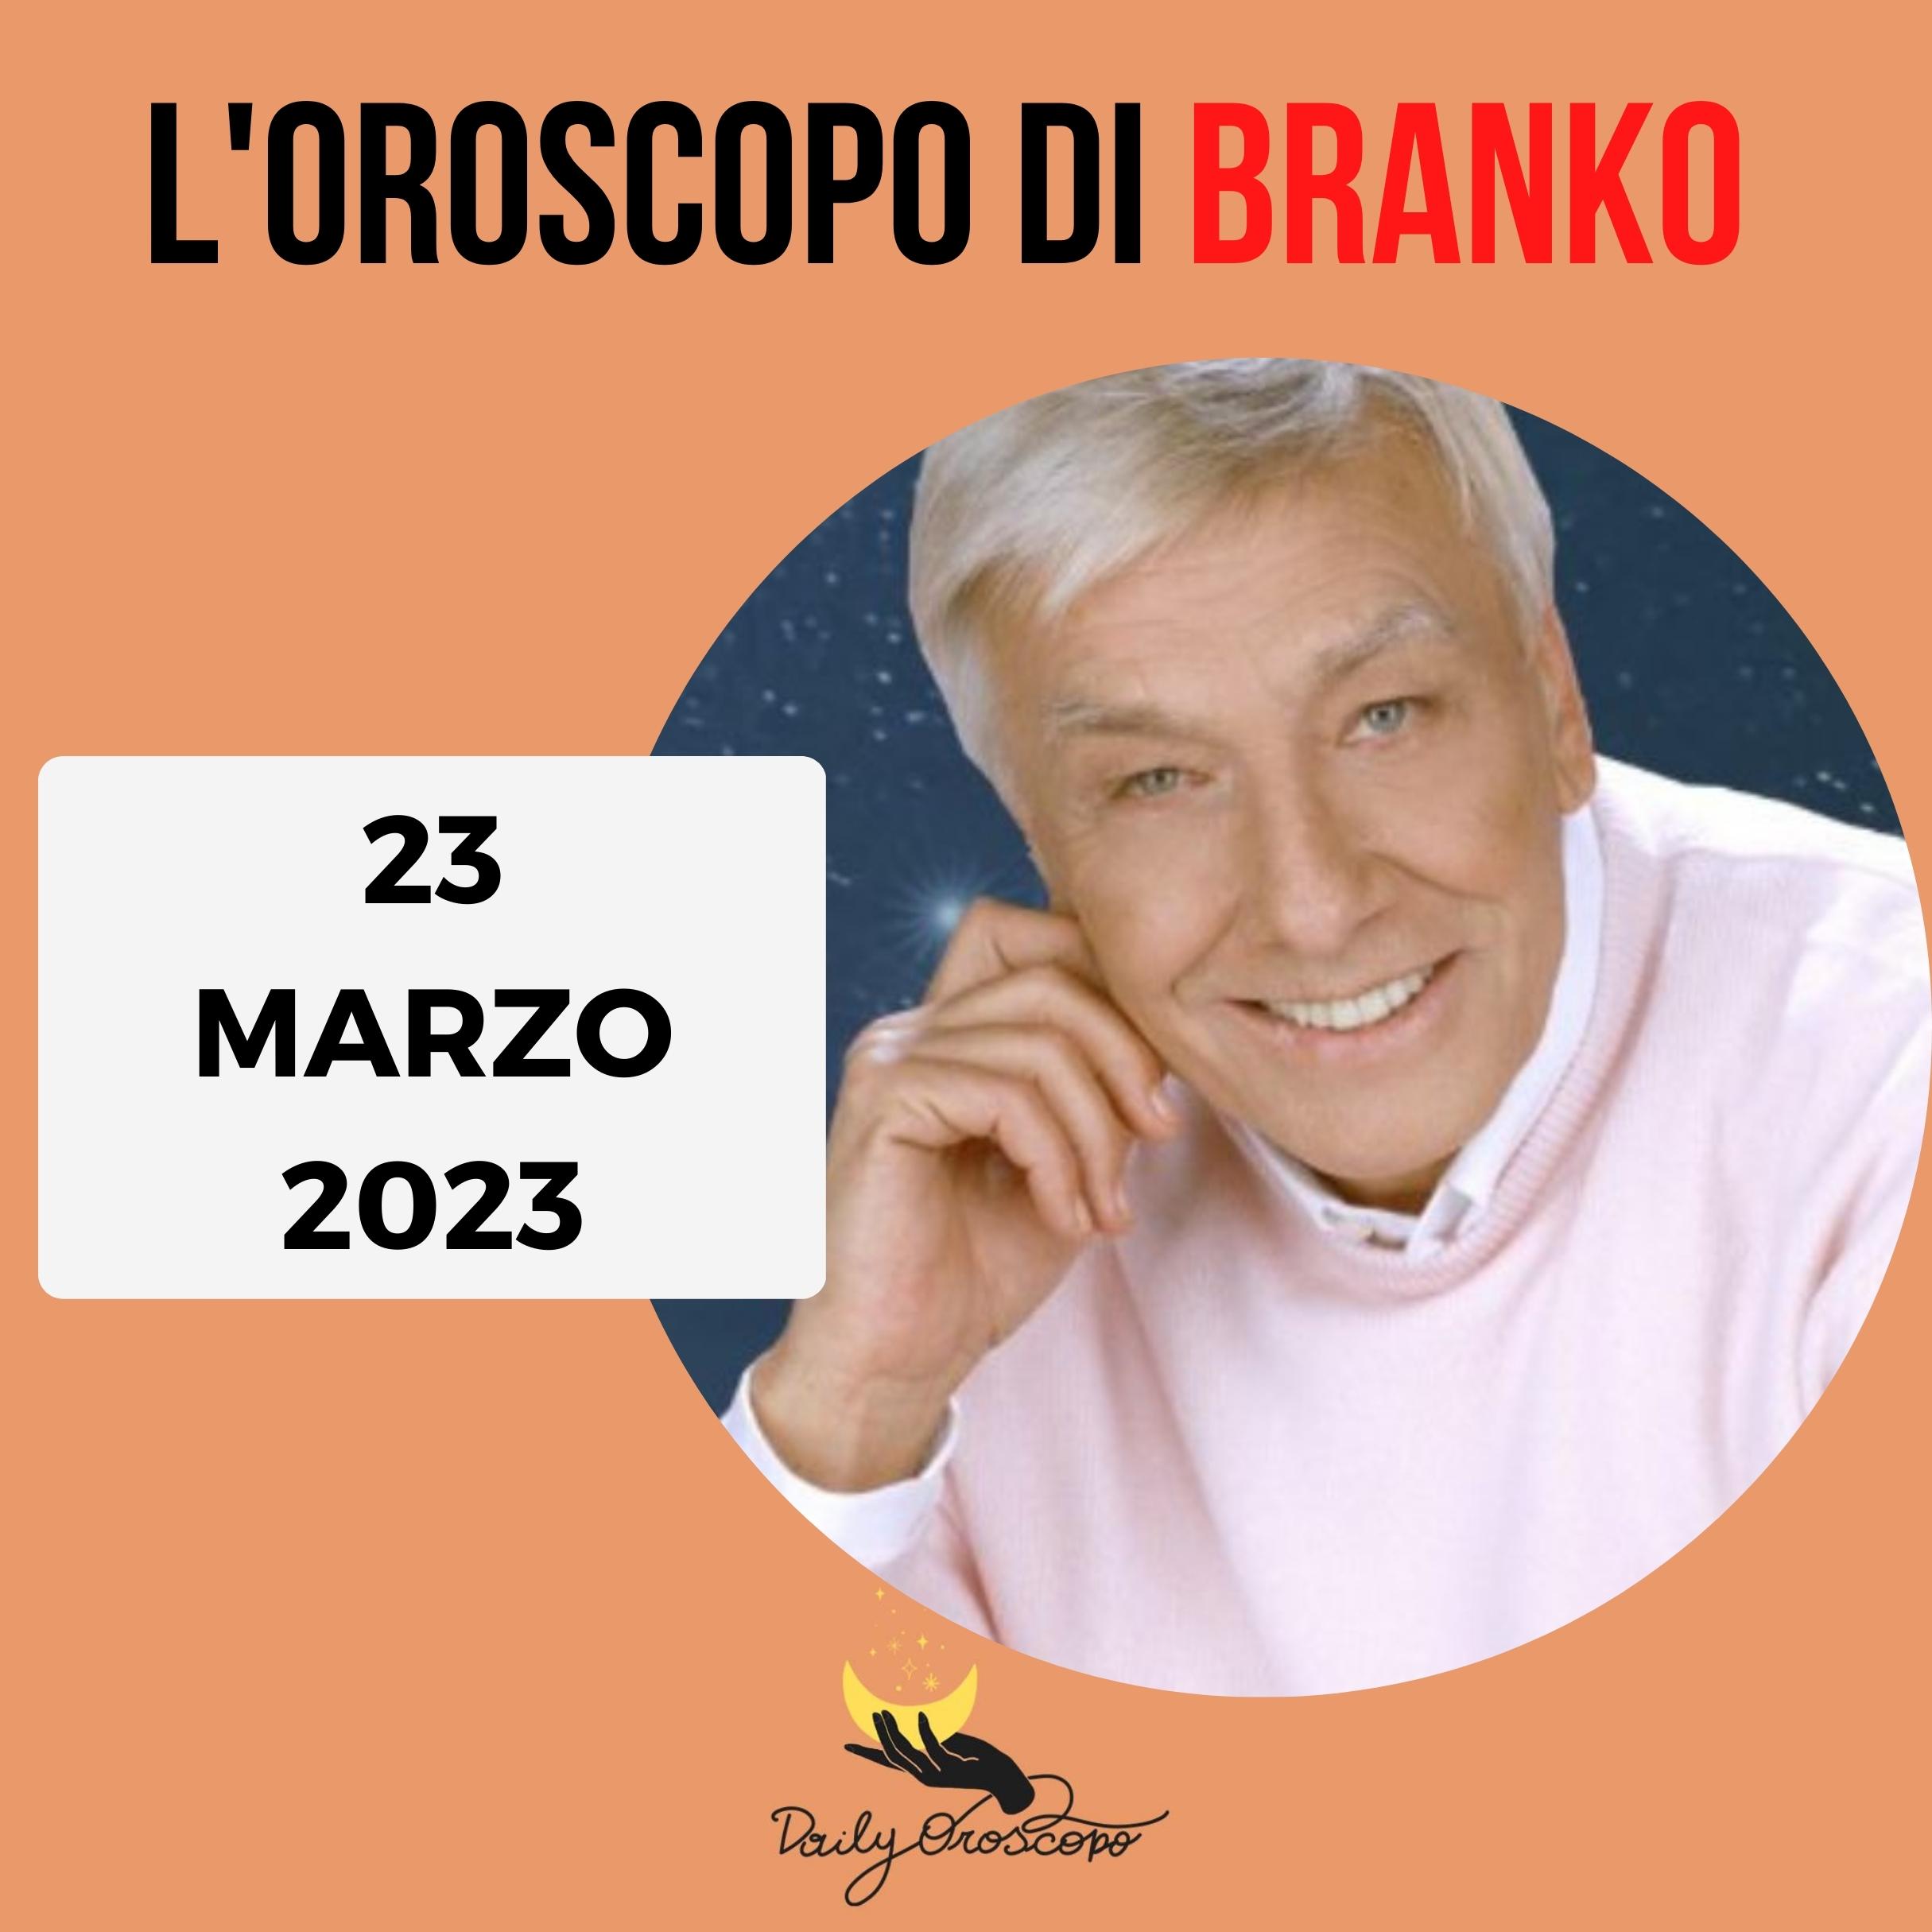 Oroscopo Branko oggi 23 marzo 2023